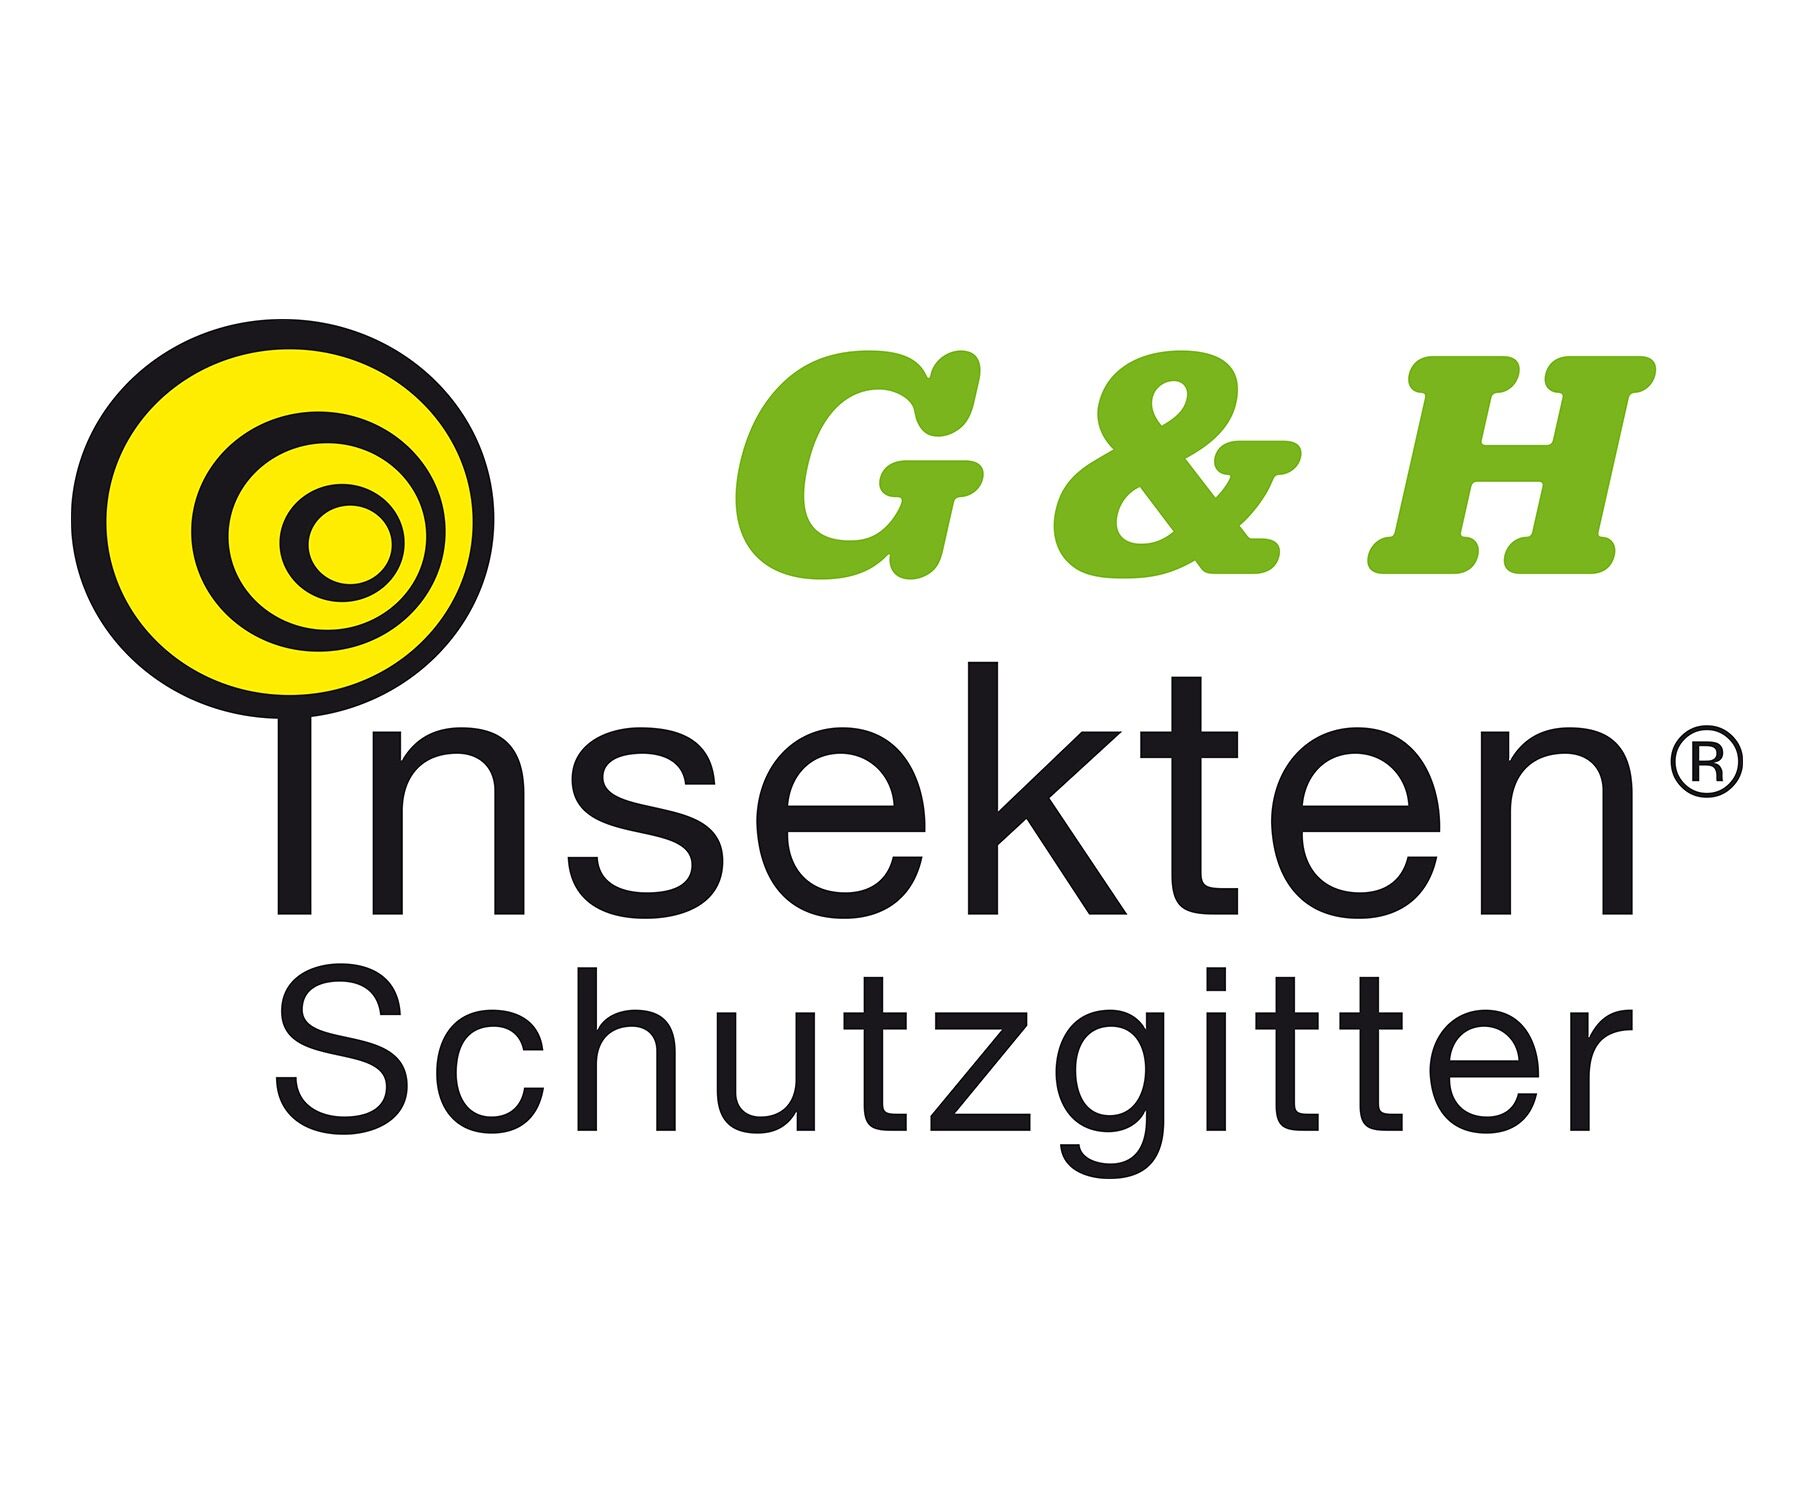 G&H Insektenschutzgitter GmbH